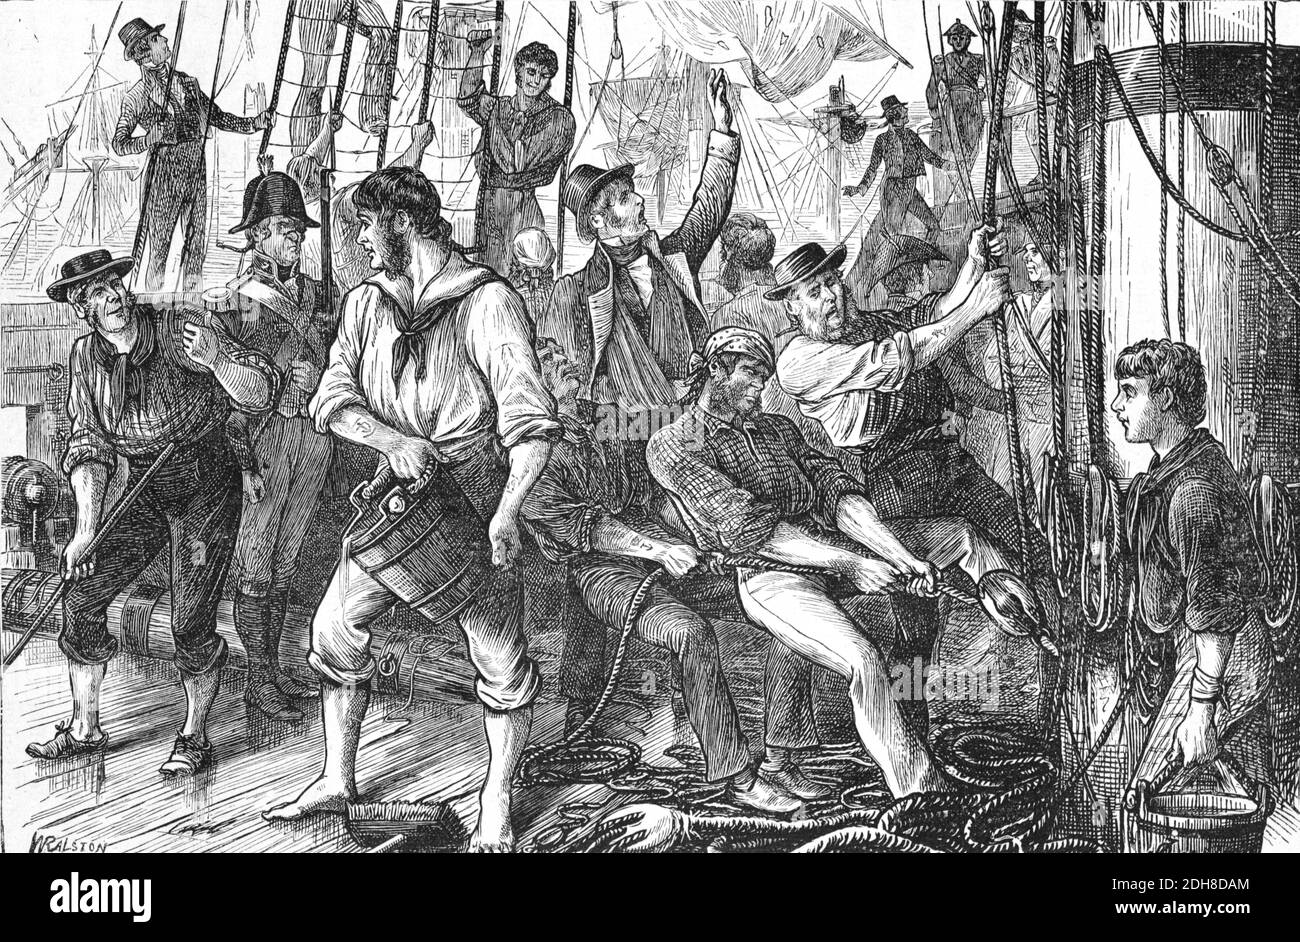 Scène de terrasse à bord, mains de pont français ou marins après une bataille navale pendant la Révolution française (Engr 1880 Ralston) Illustration ancienne ou gravure Banque D'Images